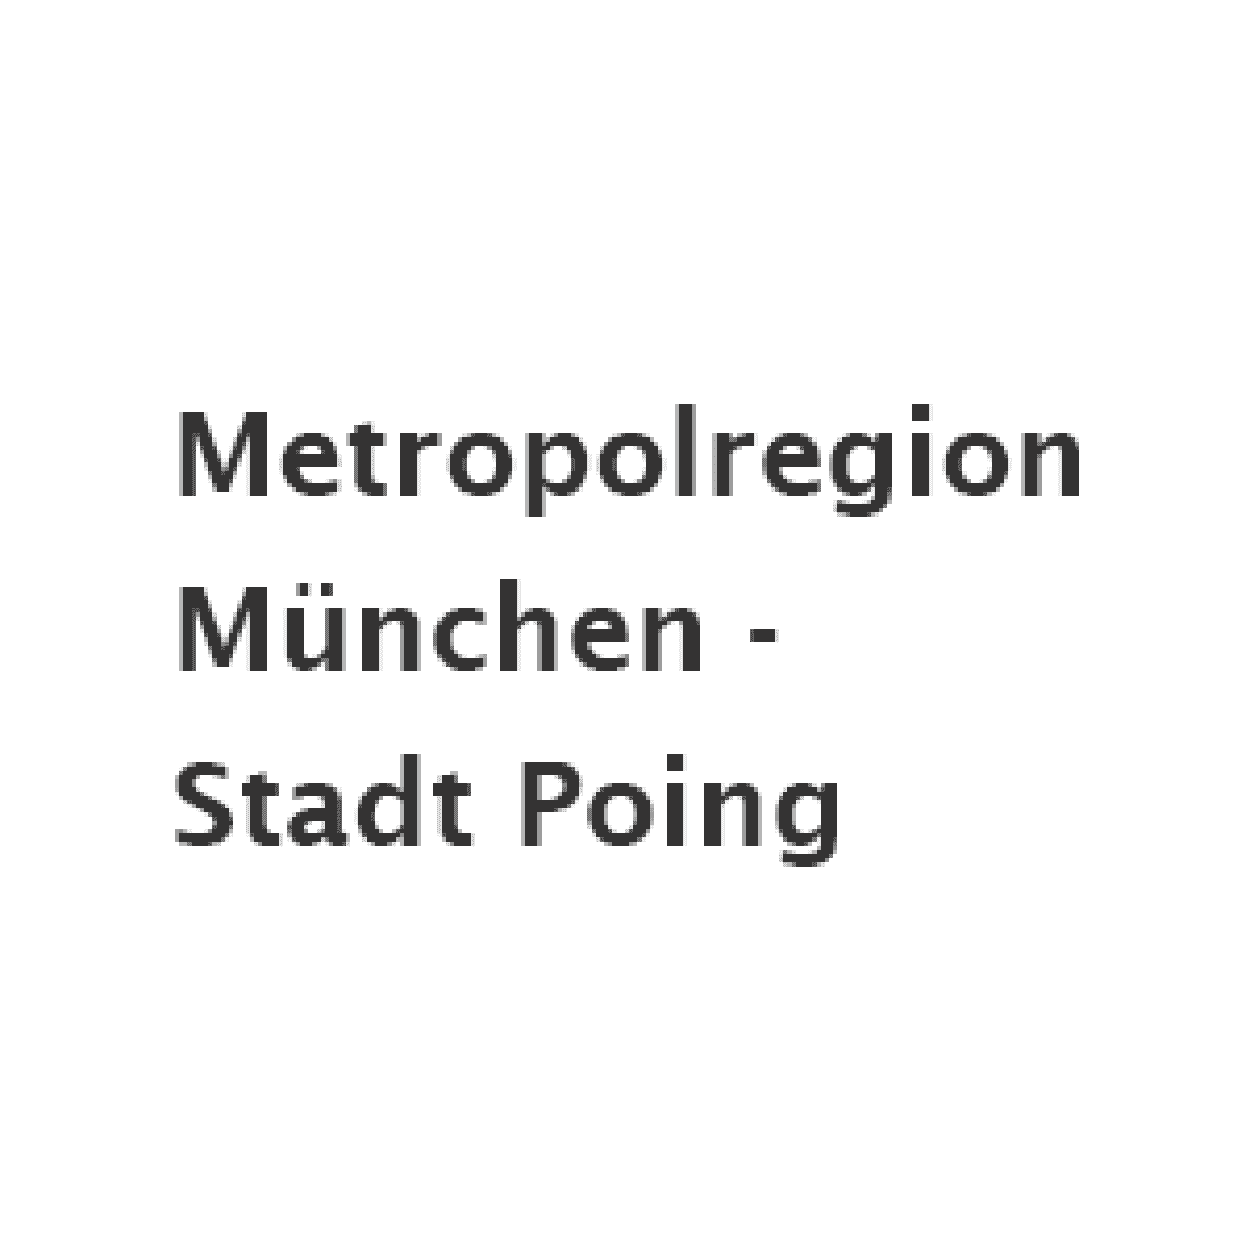 Metropolregion München - Stadt Poing